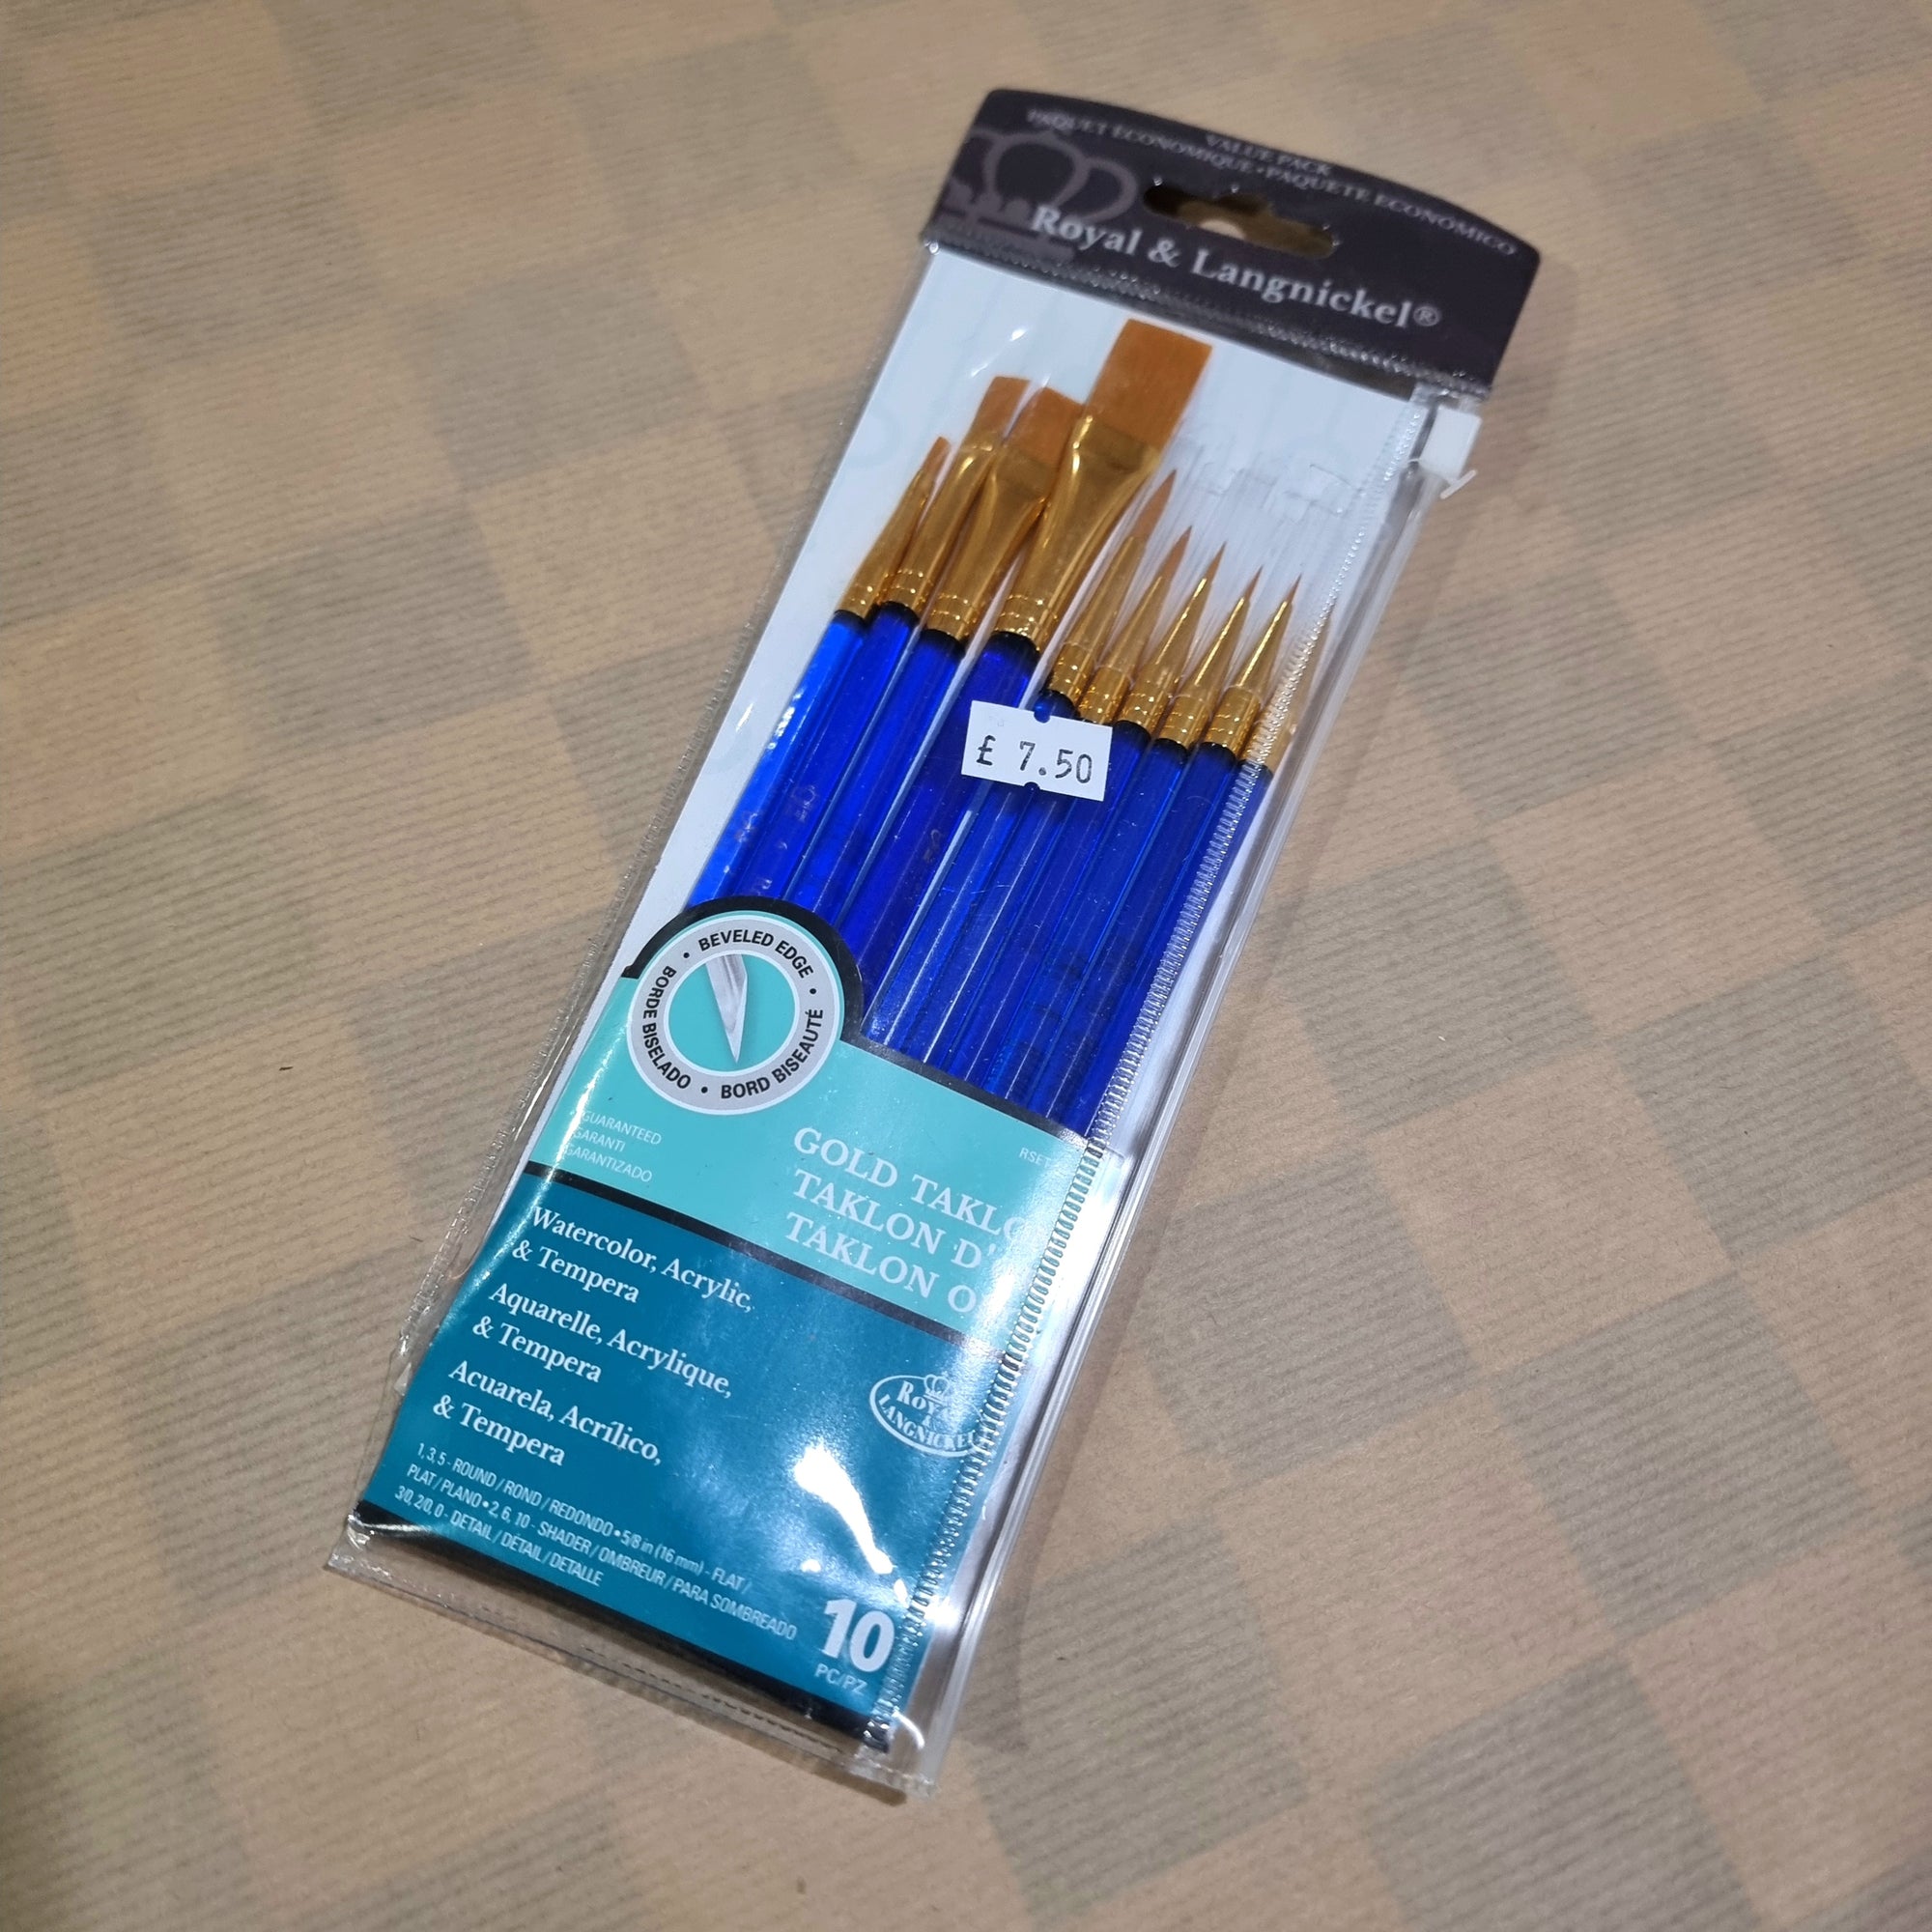 Royal & Langnickel Paintbrush Set of 10